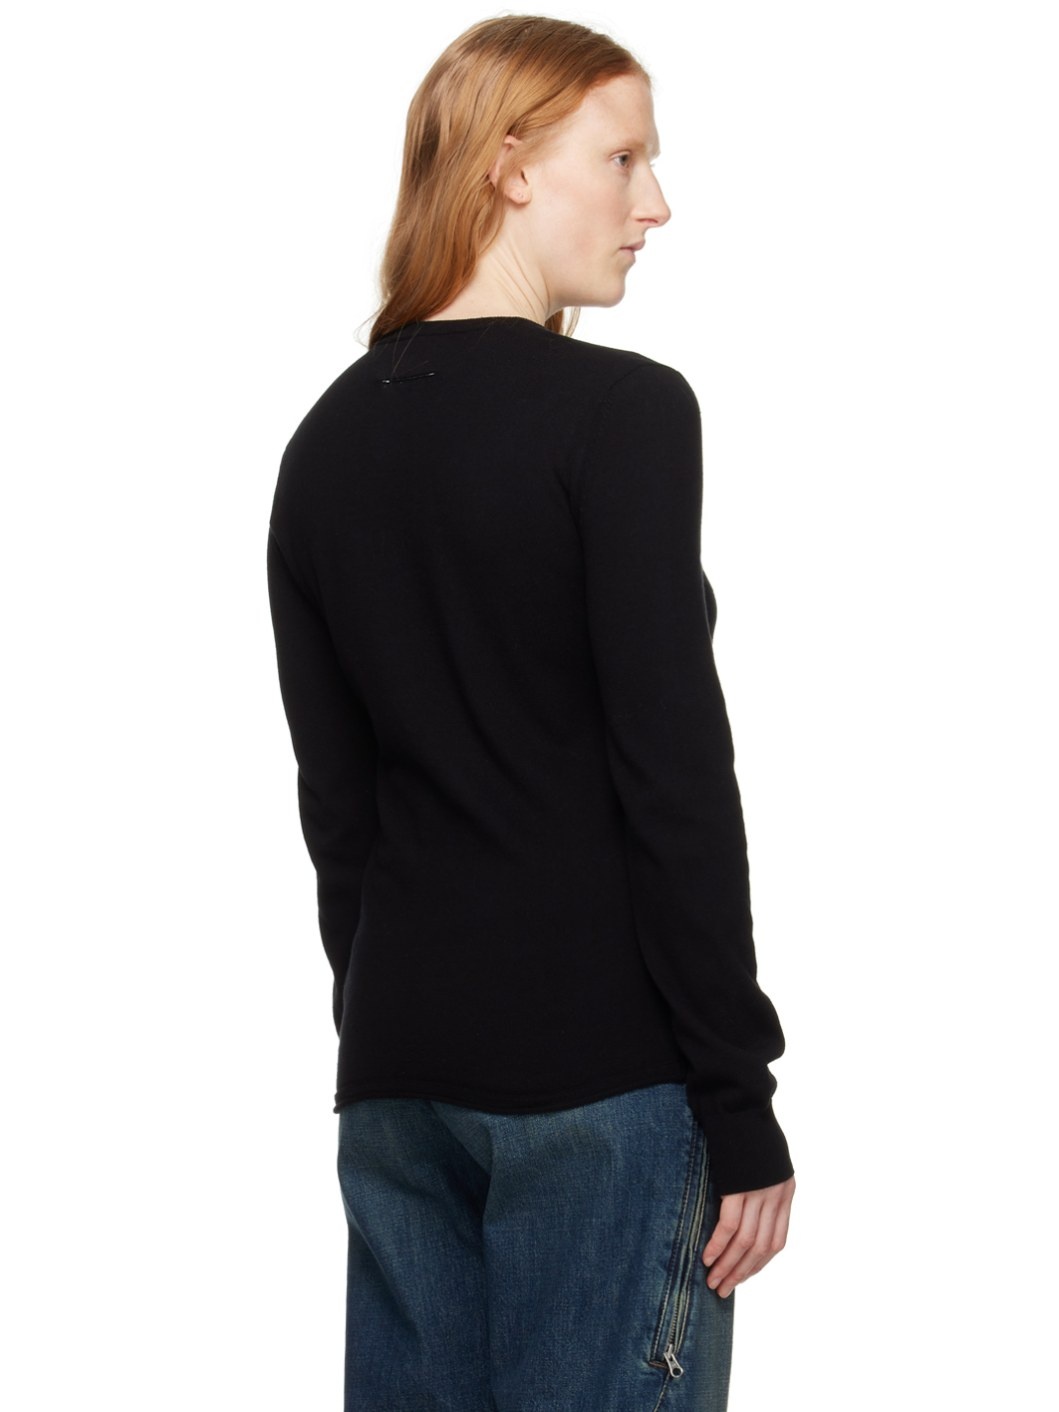 Black Intarsia Sweater - 3